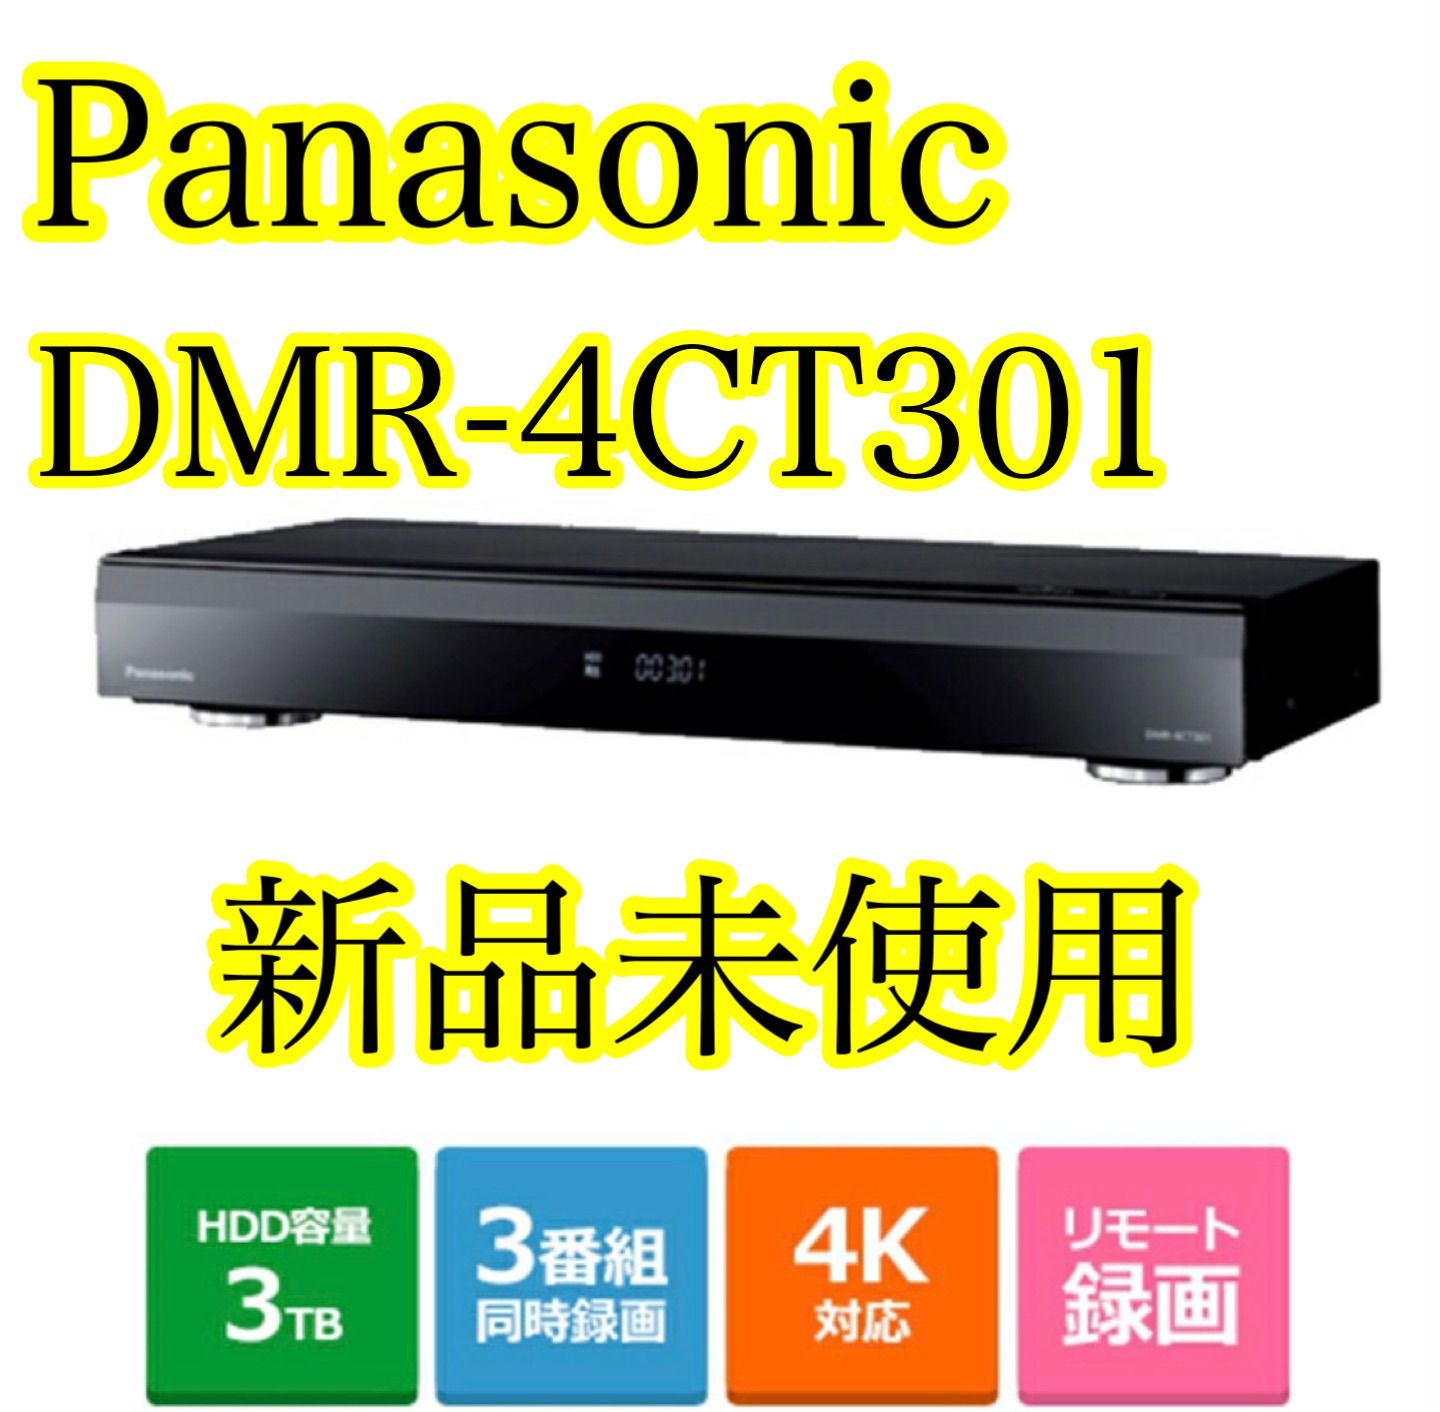 Panasonic ブルーレイディスクレコーダー DMR-4CT301 - ブルーレイ 